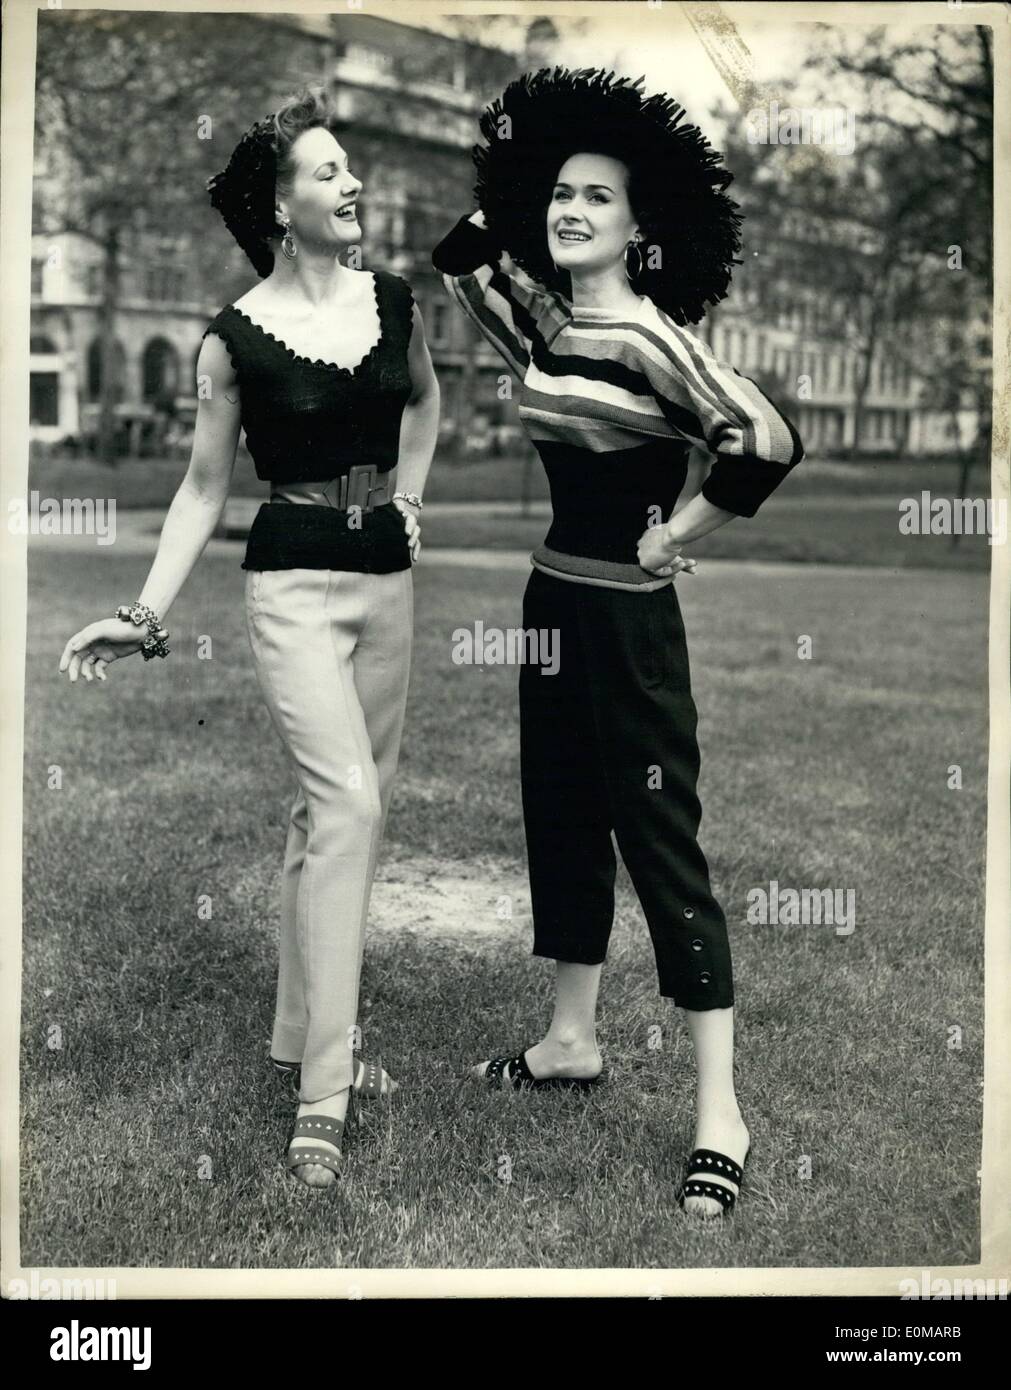 5. Mai 1954 - Crepella'' Mode auf Show.: eine Anzeige von Kleidung aus '' Crepella '', eine einzigartige Krepp Hand stricken Garn, gestrickt aus Viskose hergestellt und Acetat in mehrere ausgefallene Verdrehen von britischen Depa Crepes Ltd verarbeitet und vertrieben sie von c.b. Wolle (Manchester Ltd, wurden heute in London gezeigt). Die Kleidung heute gezeigt wurden speziell von Maureen Evans in Verbindung mit Rosalind Anthony entwickelt. Foto zeigt (L, R): '' Slack Moments'' - kausale Jersey mit den neuen langen Blick in dunkelblau '' Crepella''. Breite v-Ausschnitt mit Wellenschliff, die an den Ärmeln wiederholt wird abgeholt Stockfoto